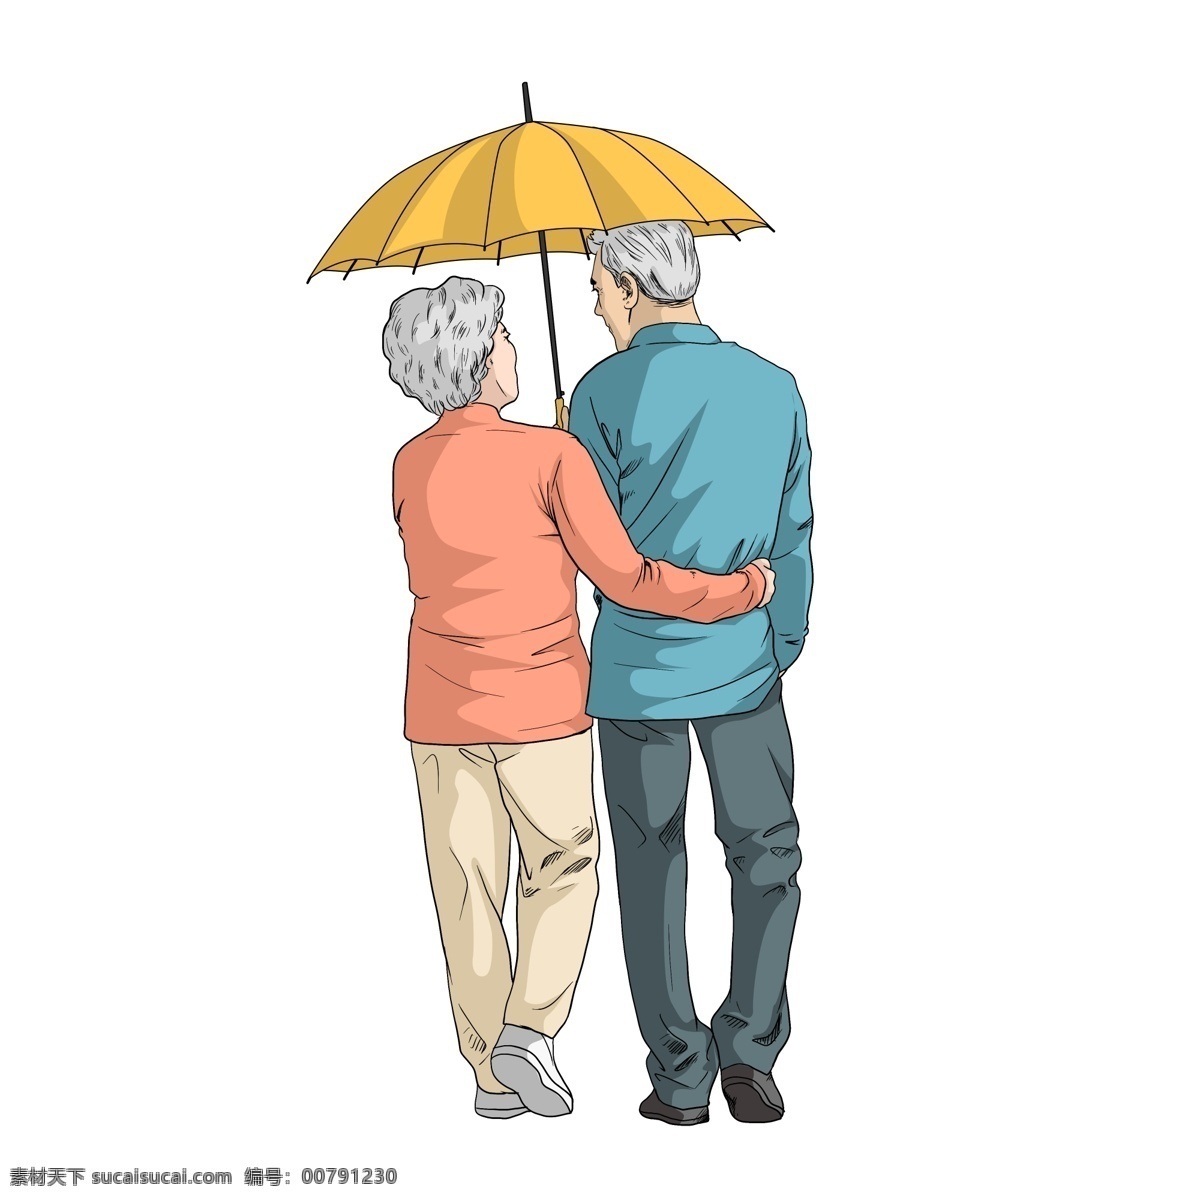 打伞 逛街 老人 背影 商用 打伞老人背影 逛街的老人 退休老人 装饰图案